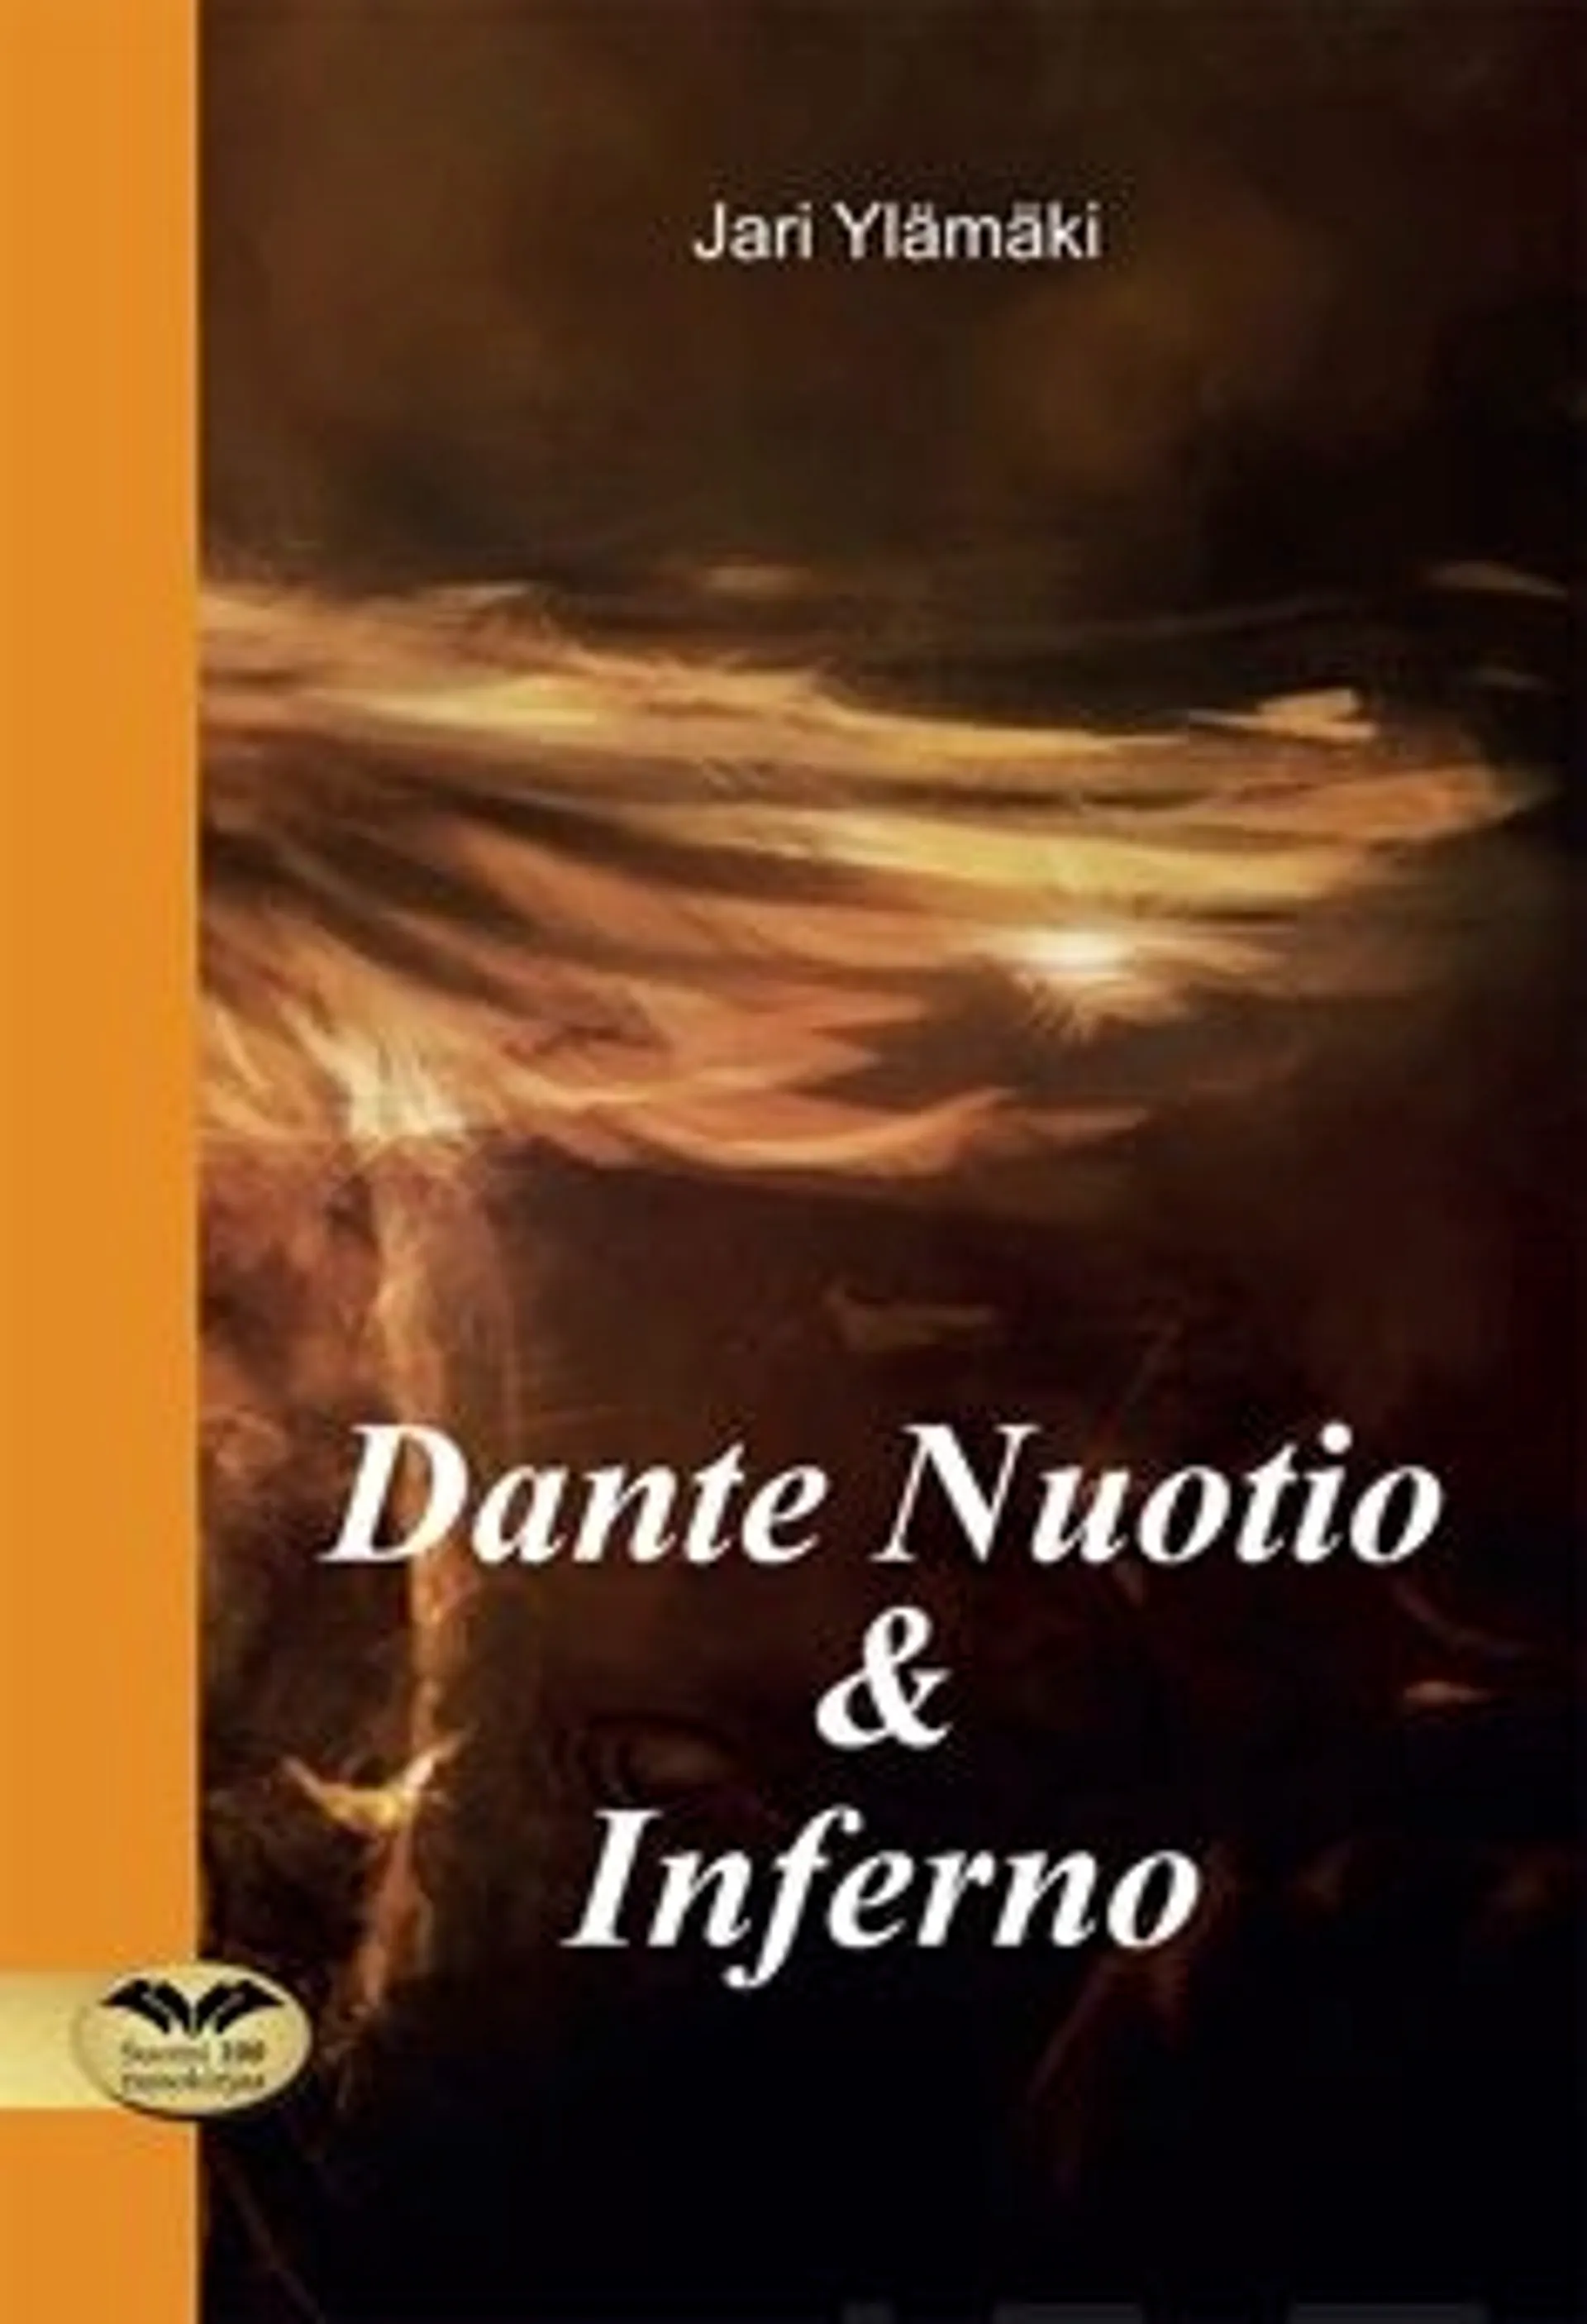 Ylämäki, Dante Nuotio & Inferno